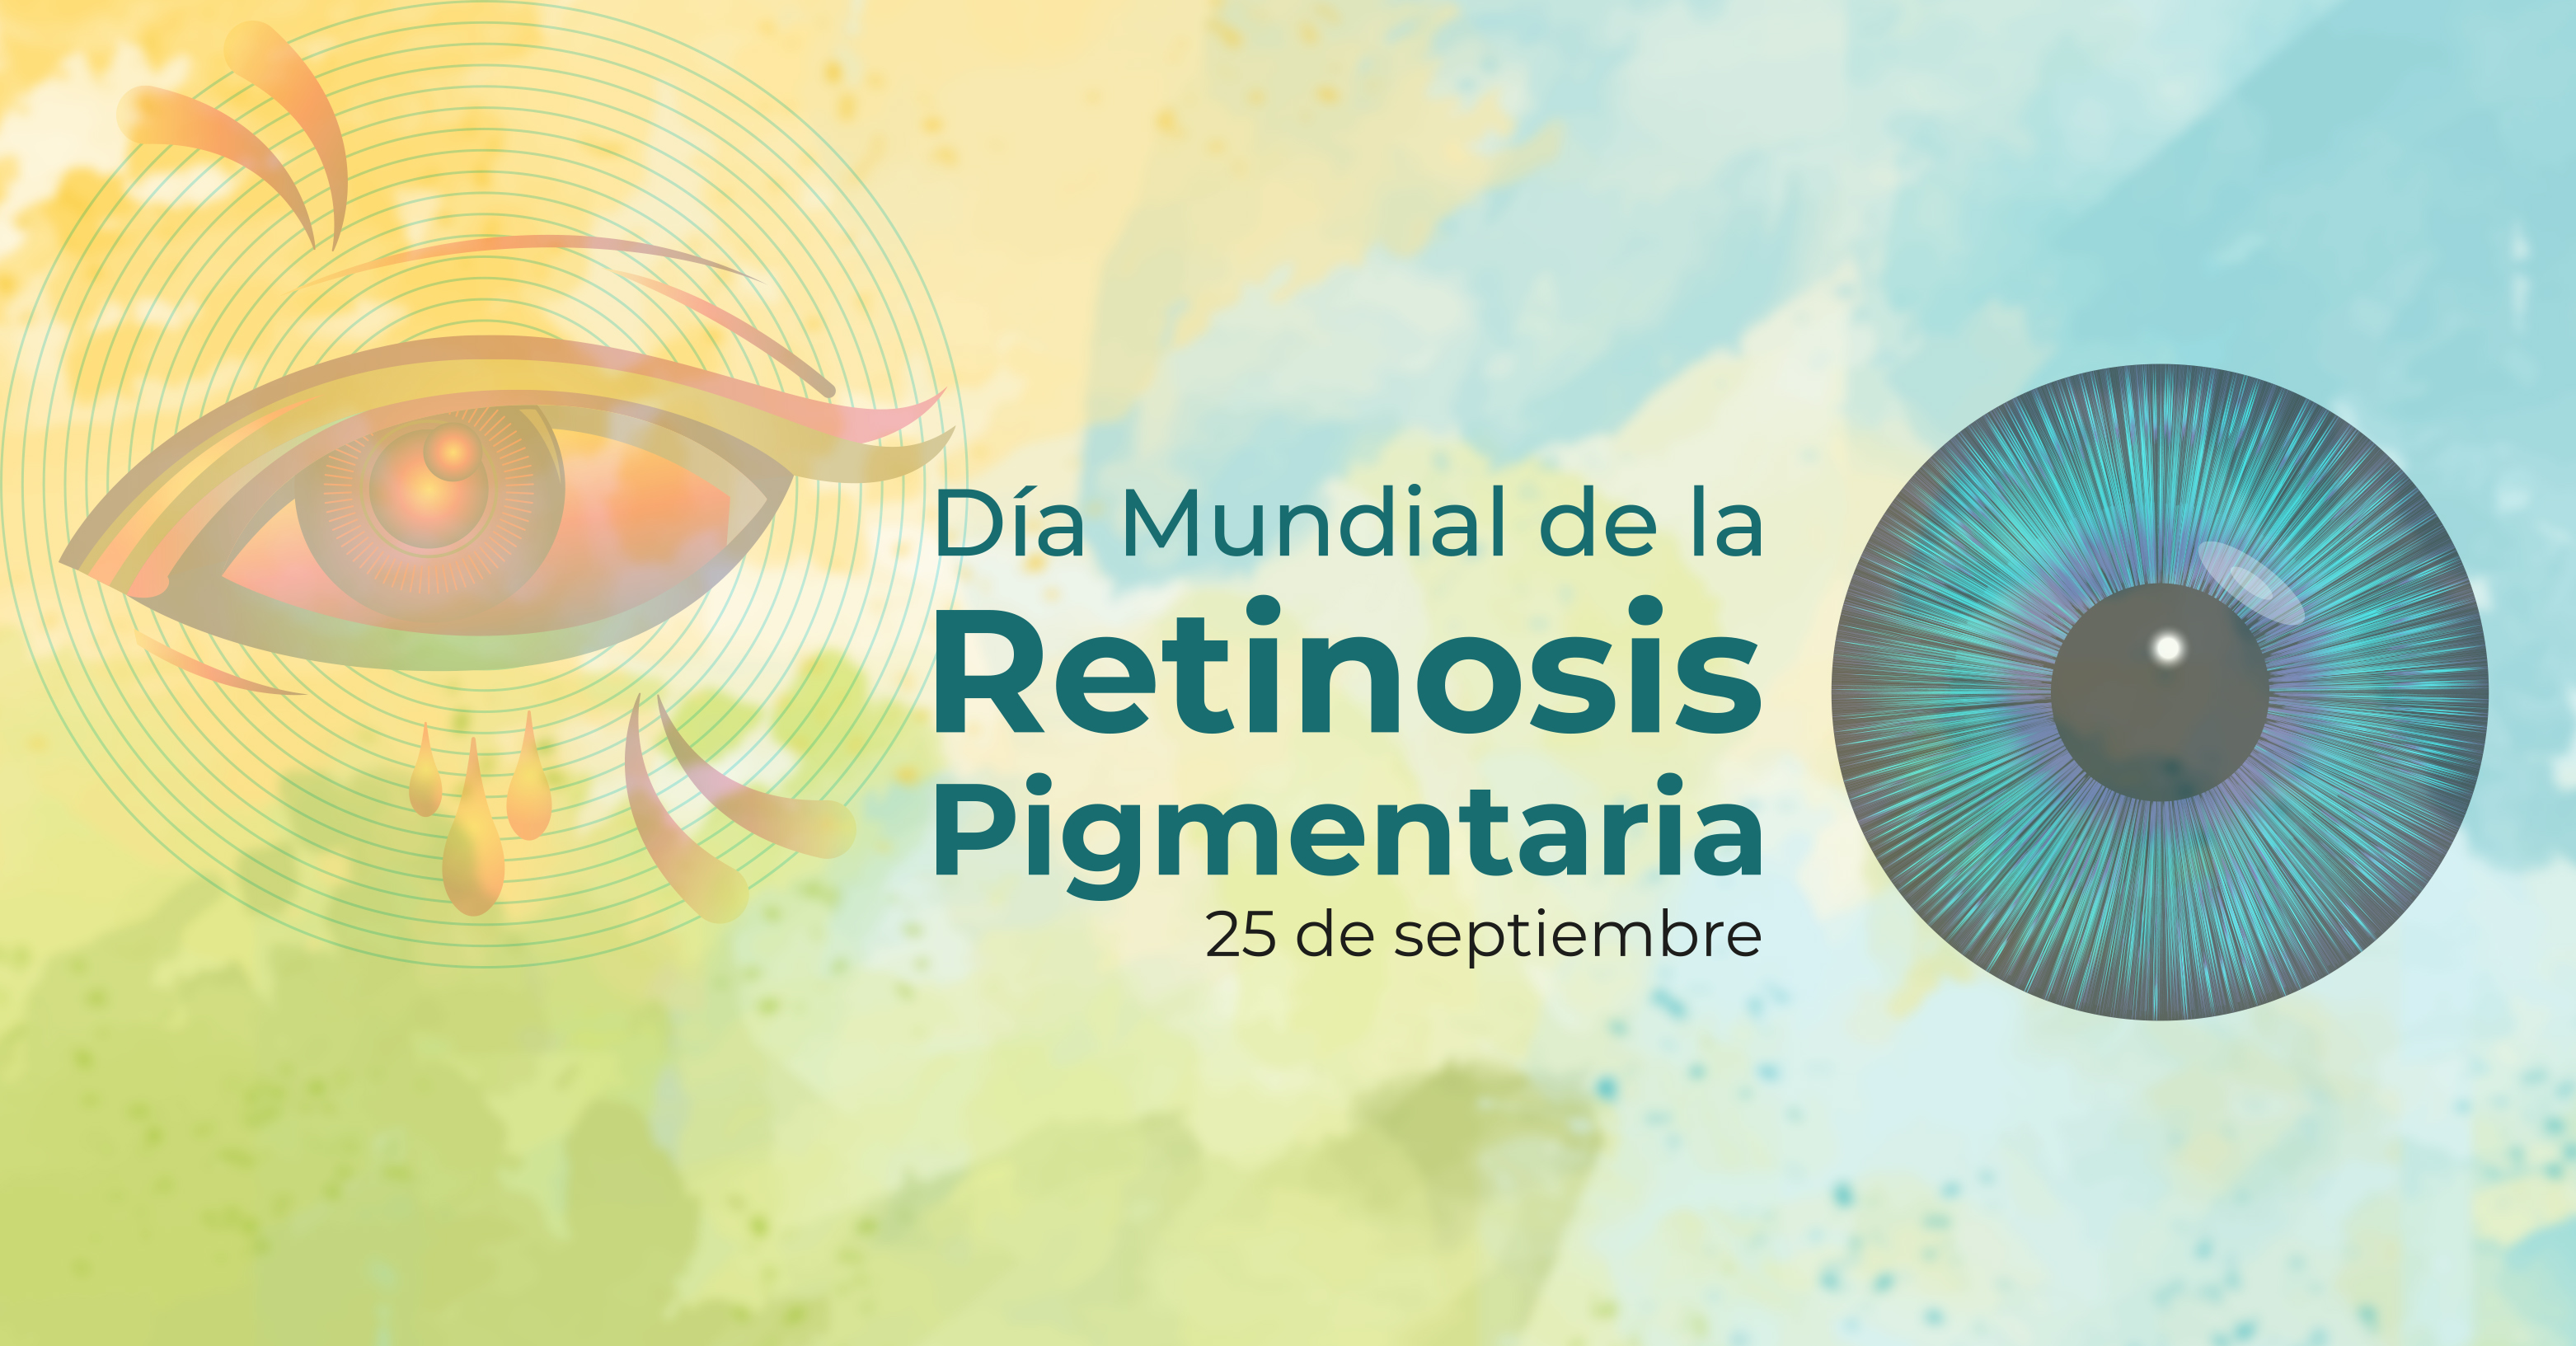 Día Mundial de la Retinosis Pigmentaria | 25 de septiembre